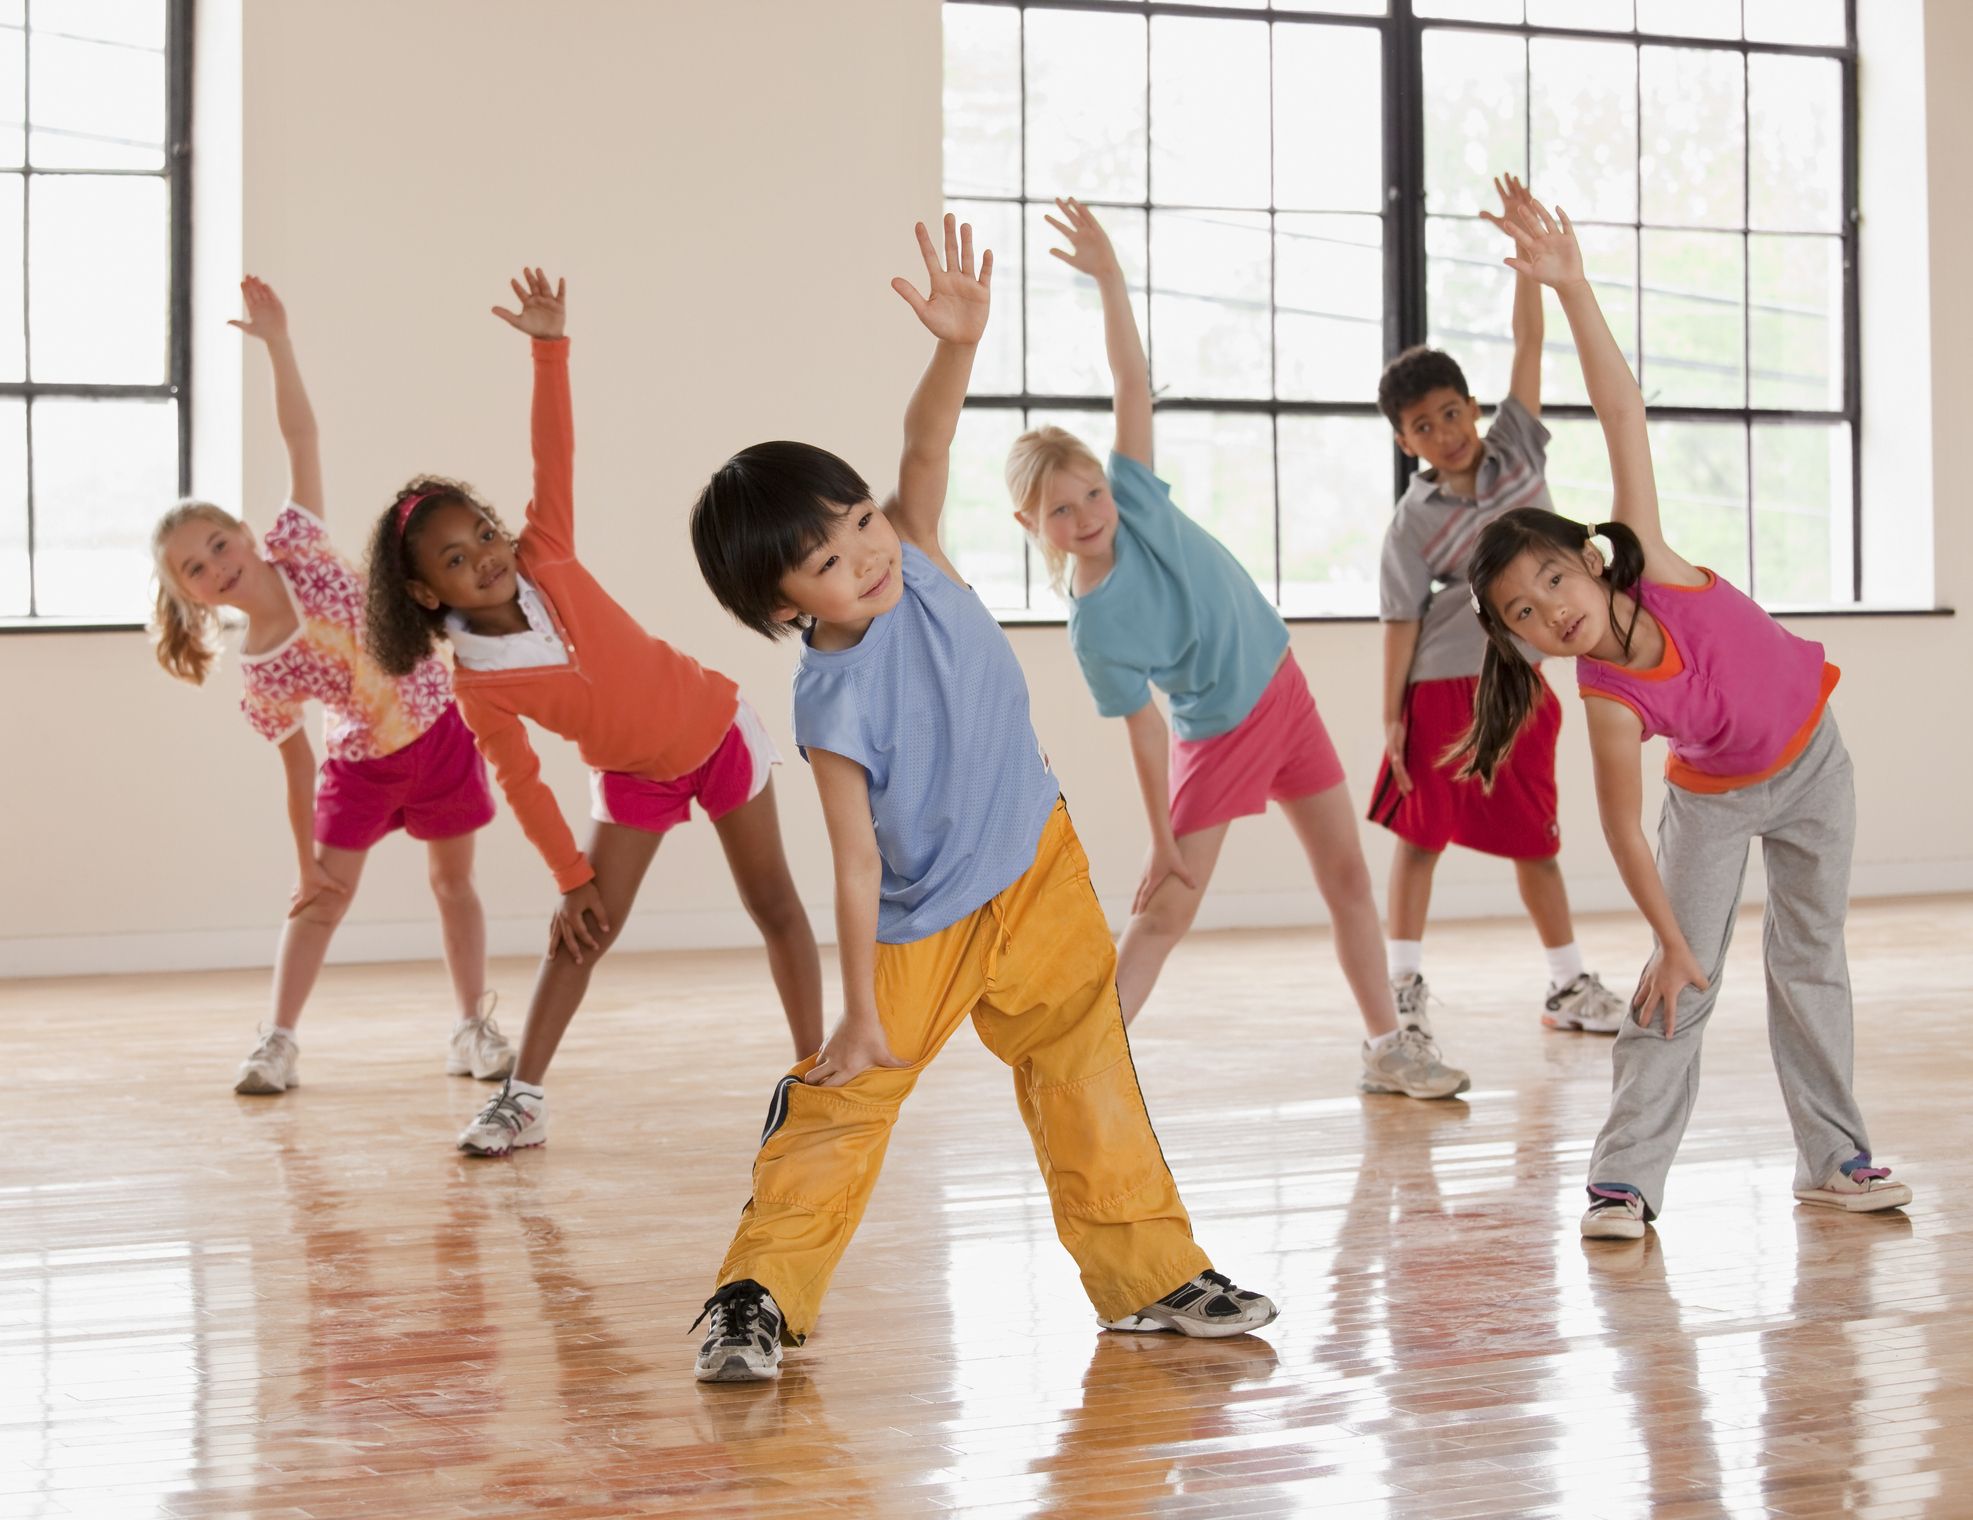 Do exercises picture. Занятие спортом дети. Физическая культура. Занятие физкультурой и спортом. Дети на физкультуре.